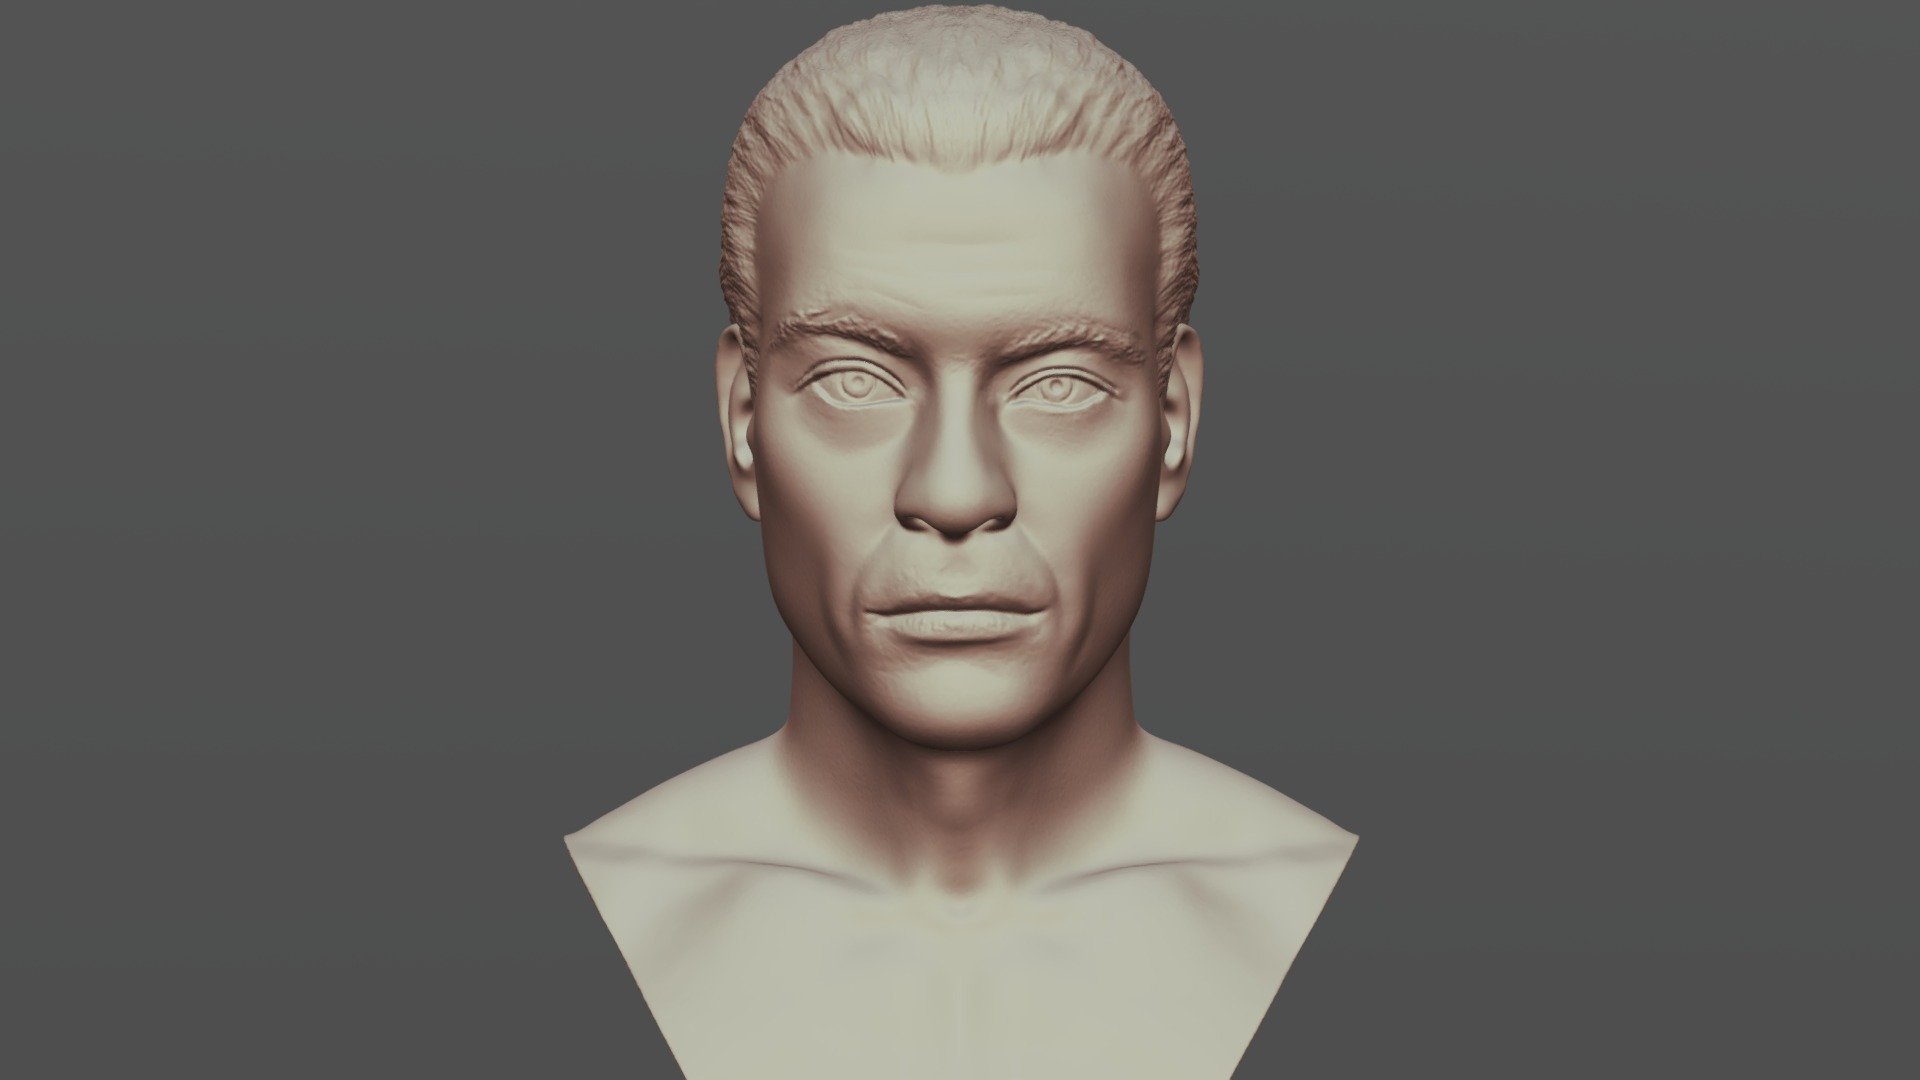 Van Damme Kickboxer bust for 3D printing